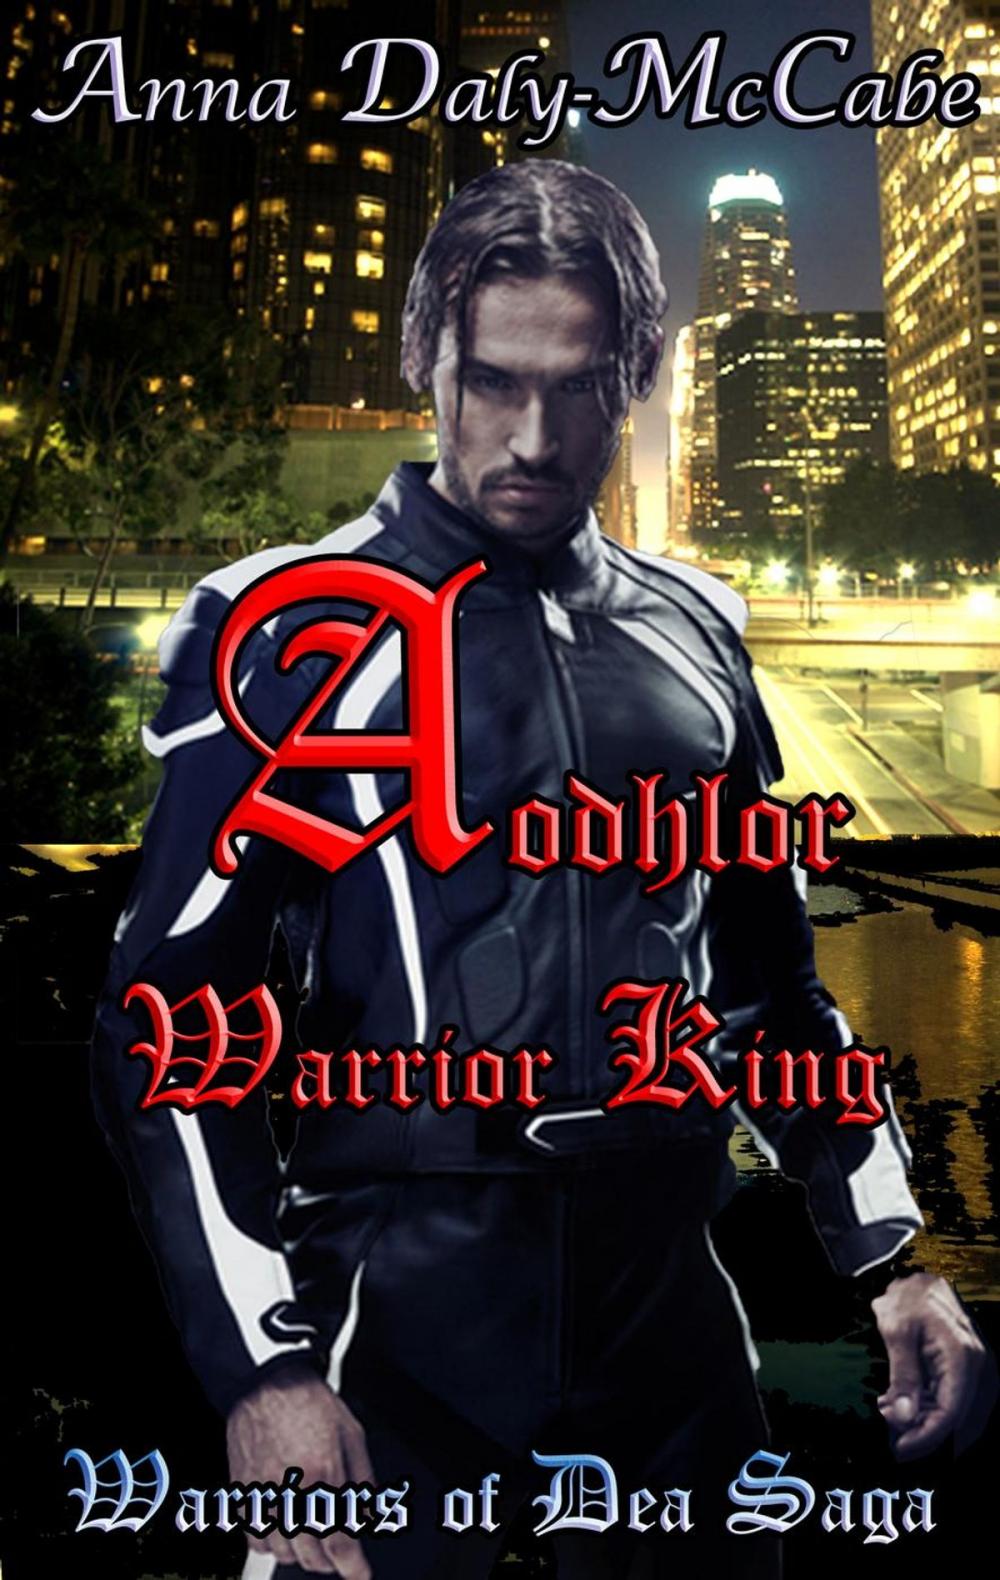 Big bigCover of Aodhlor: Warrior King